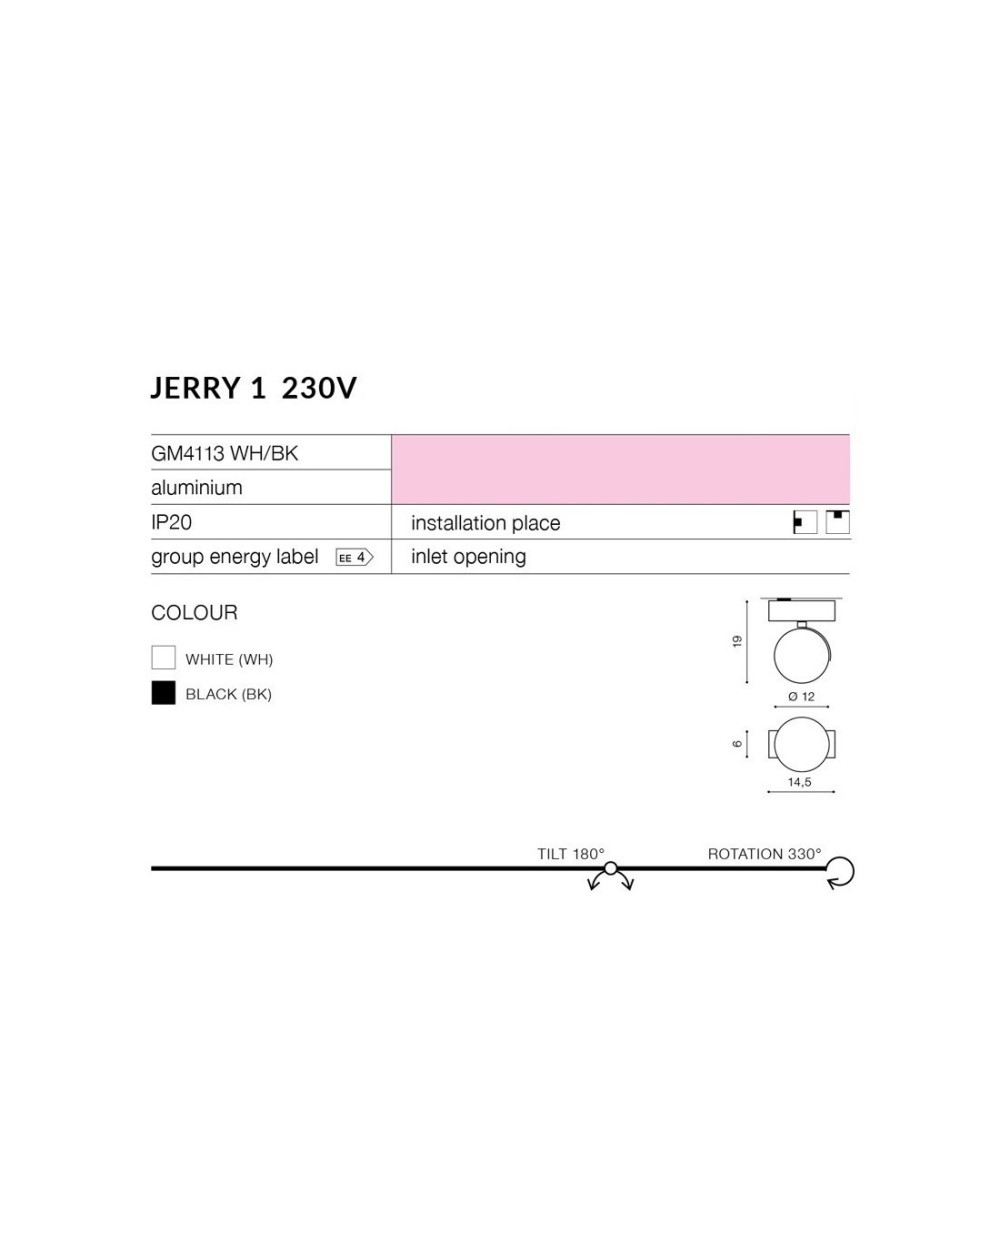 JERRY 1 230V